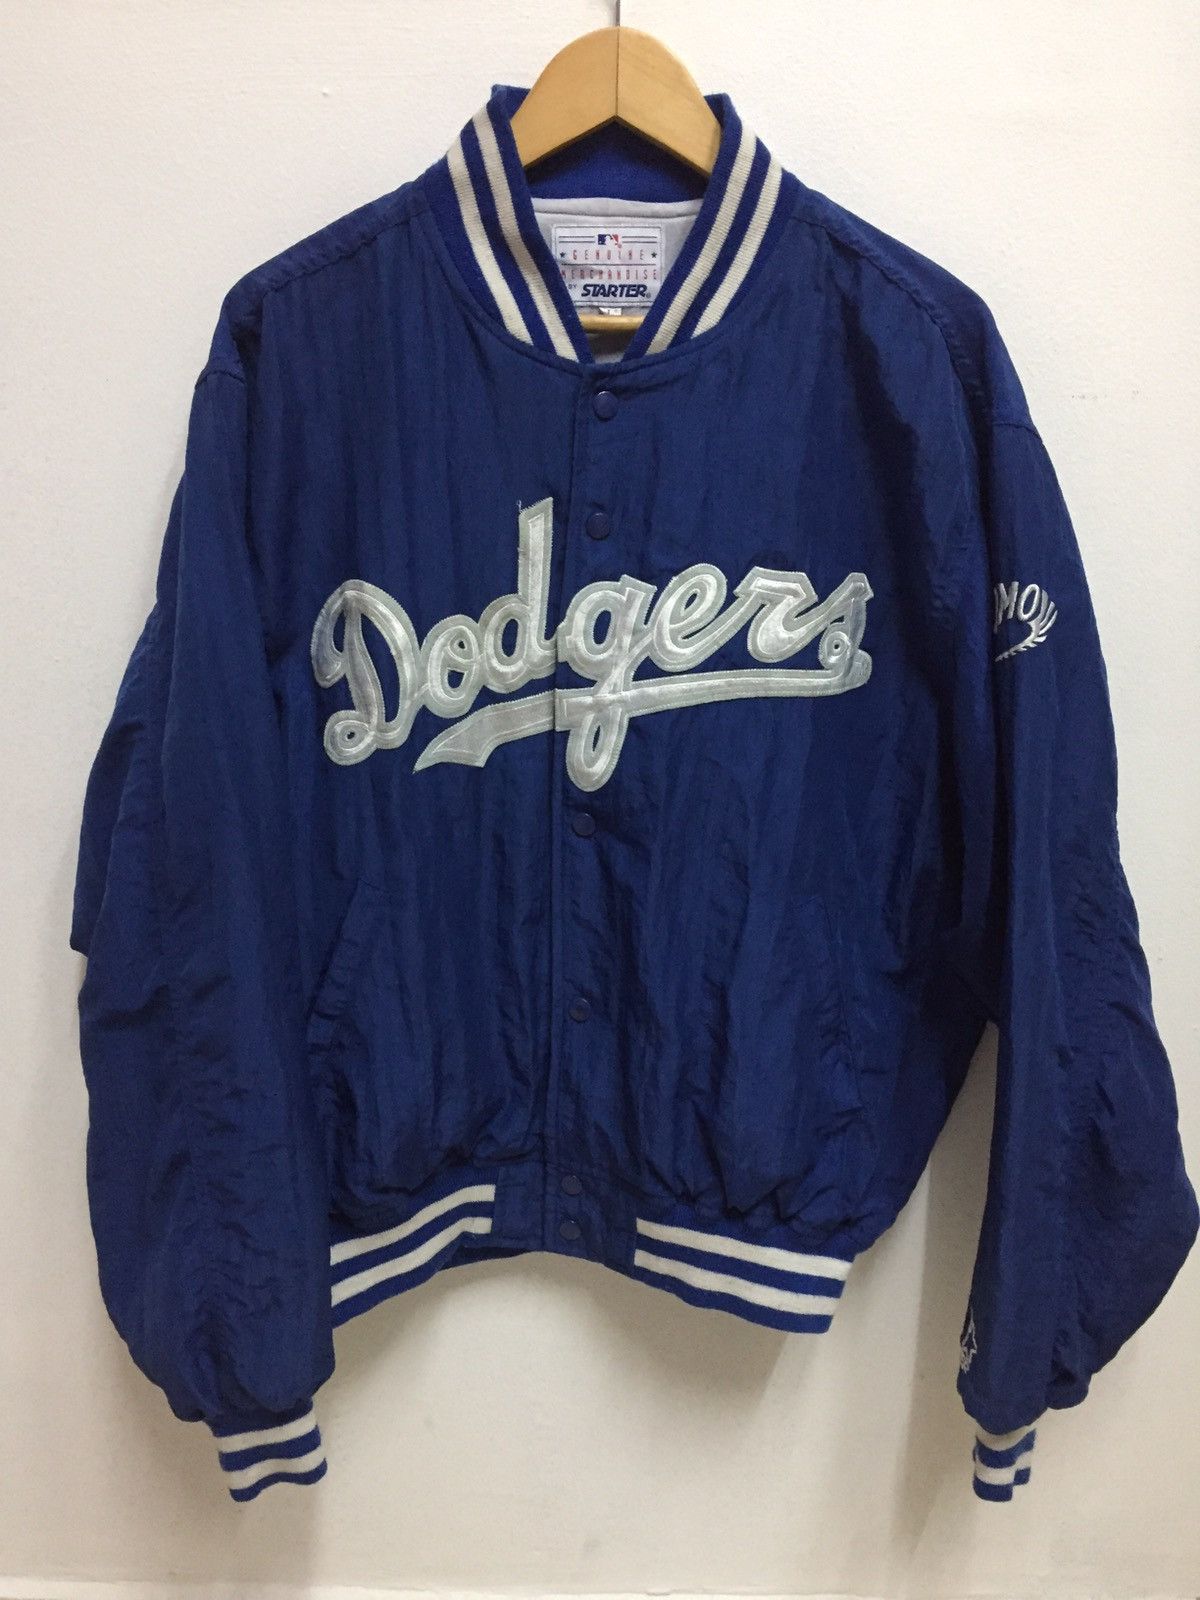 Vintage 90s LA DODGERS Starter Varsity Jacket MLB Major League